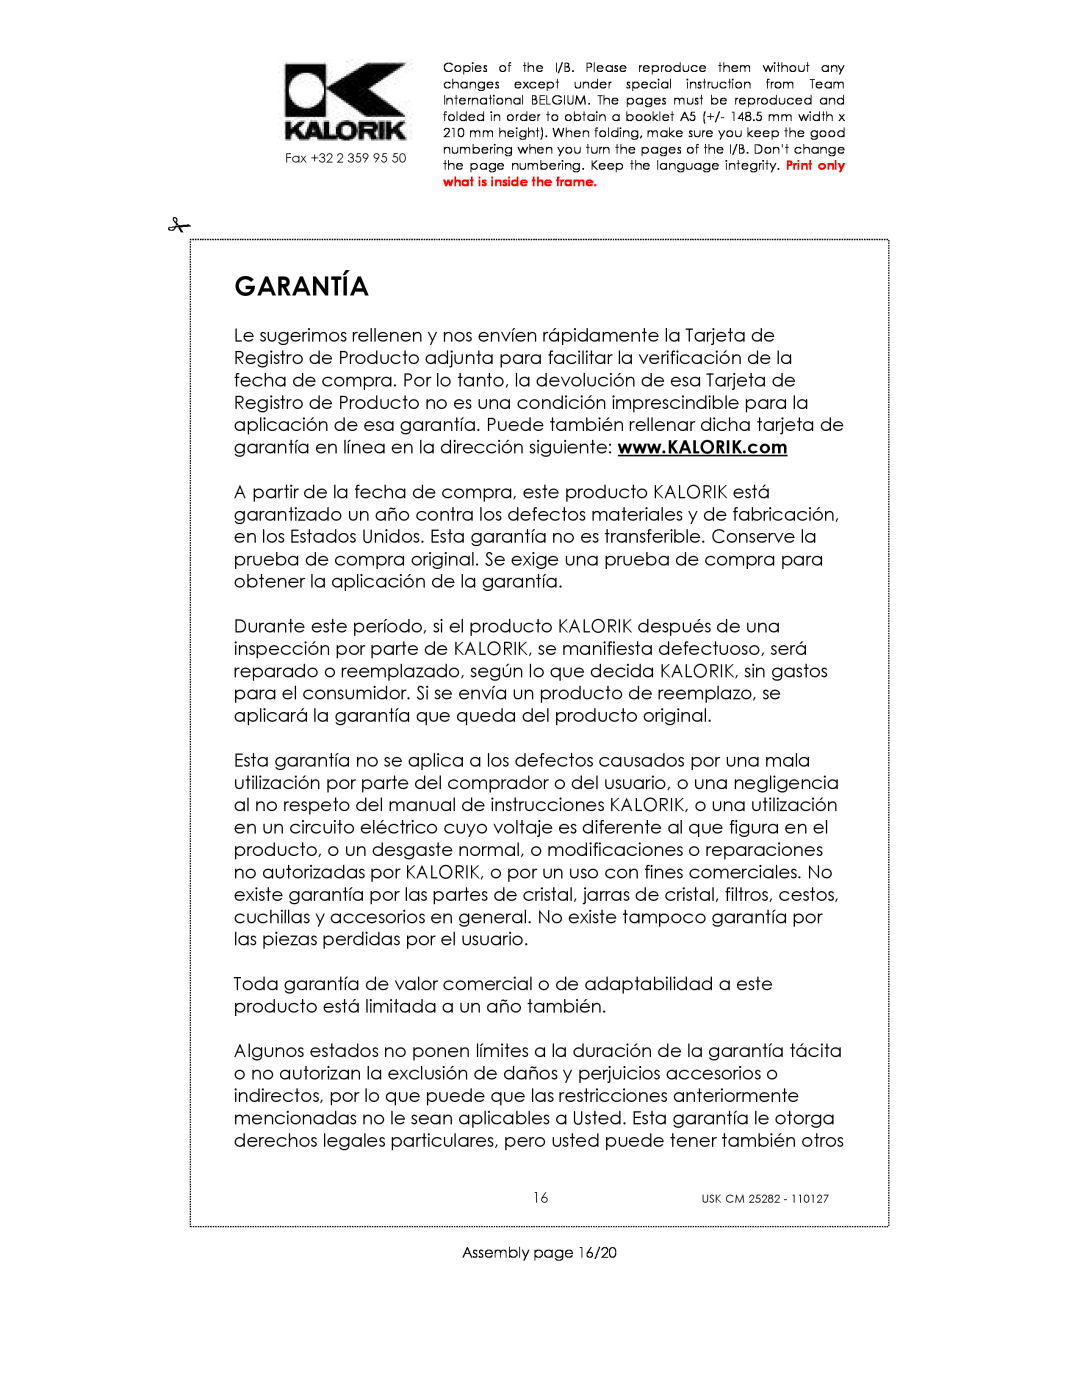 Kalorik USK CM 25282 manual Garantía, Assembly page 16/20 